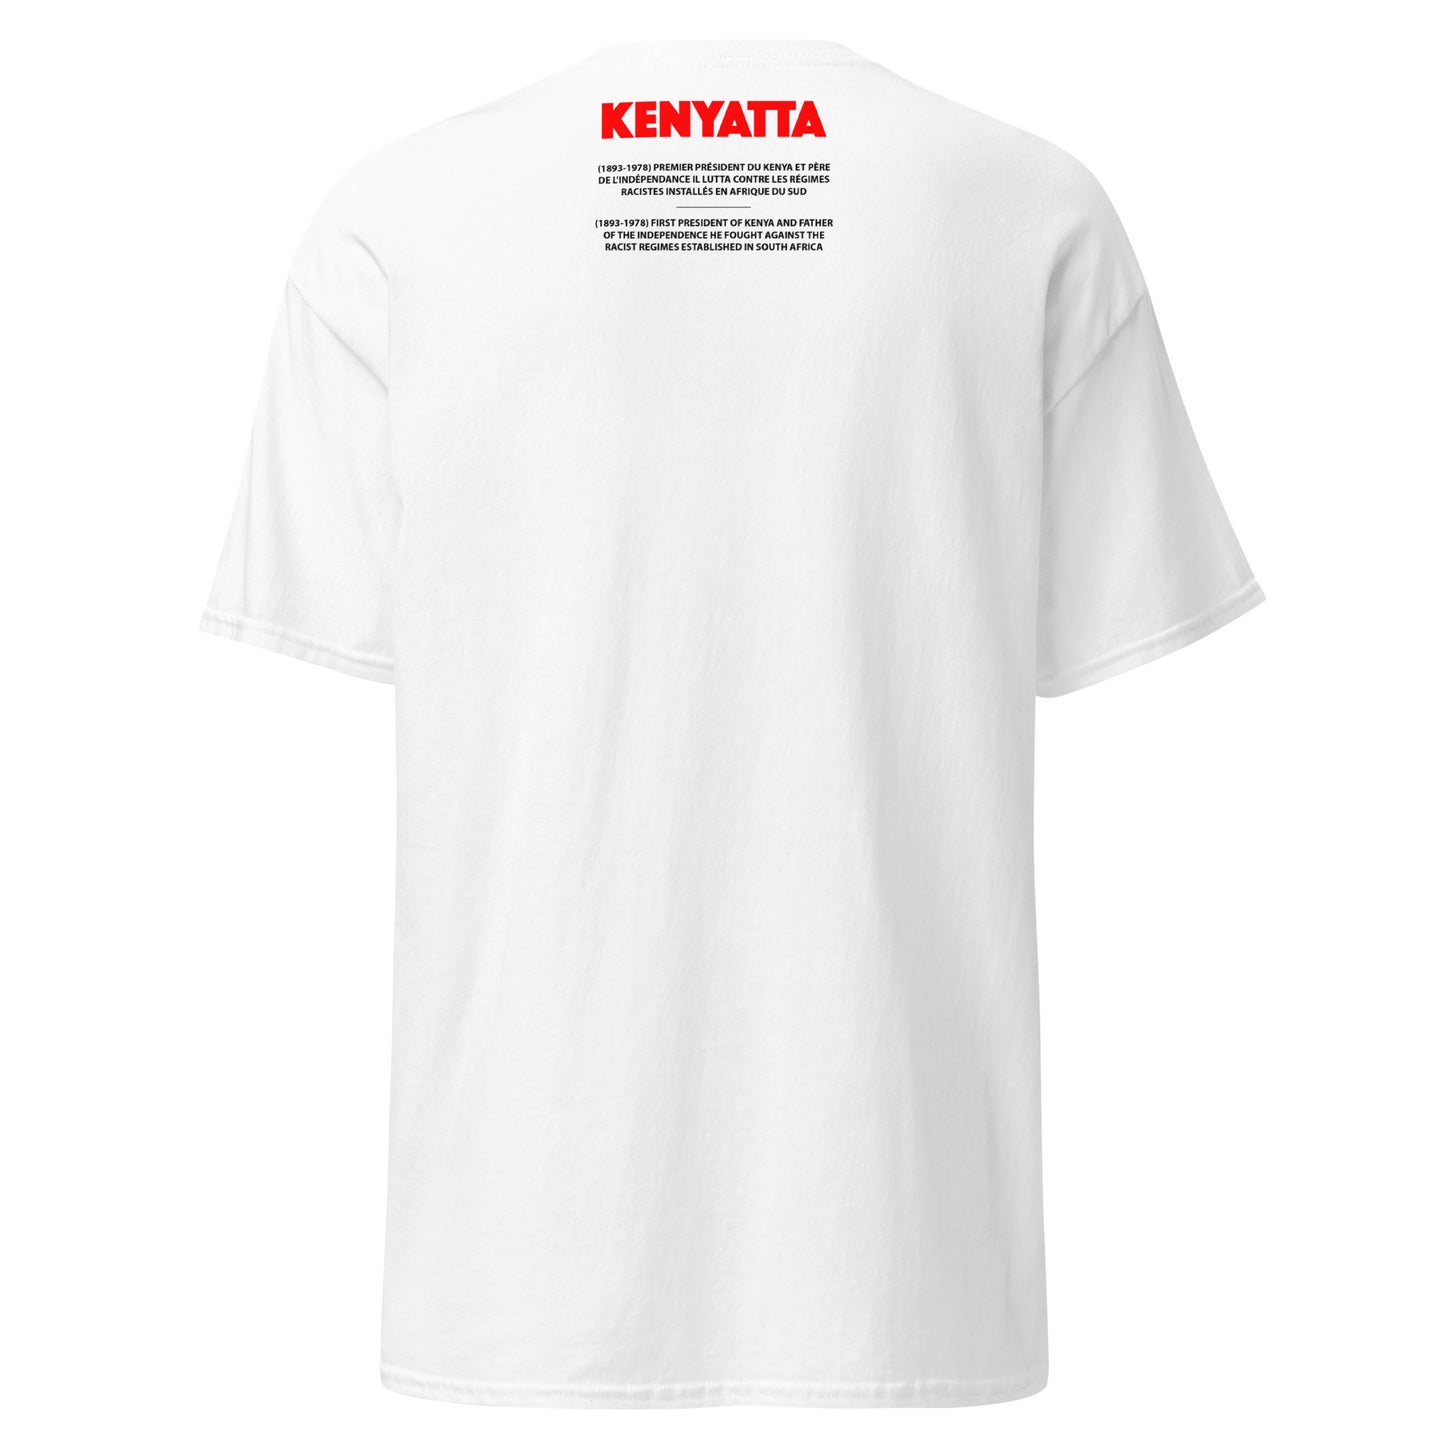 KENYATTA (T-Shirt Cadre)